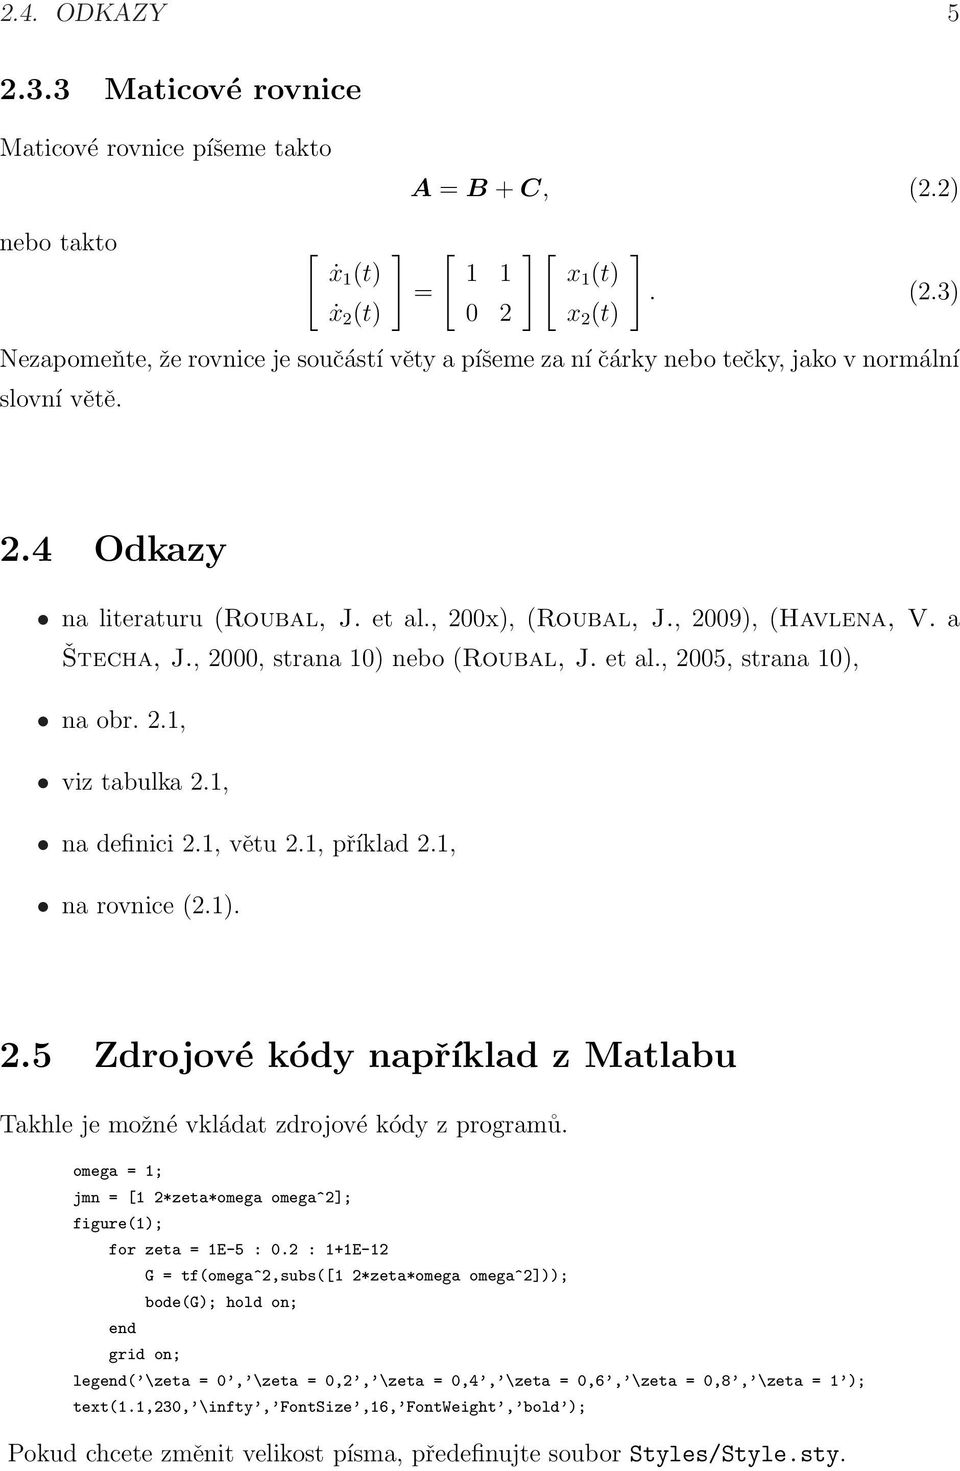 1, na definici 2.1, větu 2.1, příklad 2.1, na rovnice (2.1). 2.5 Zdrojové kódy například z Matlabu Takhle je možné vkládat zdrojové kódy z programů.